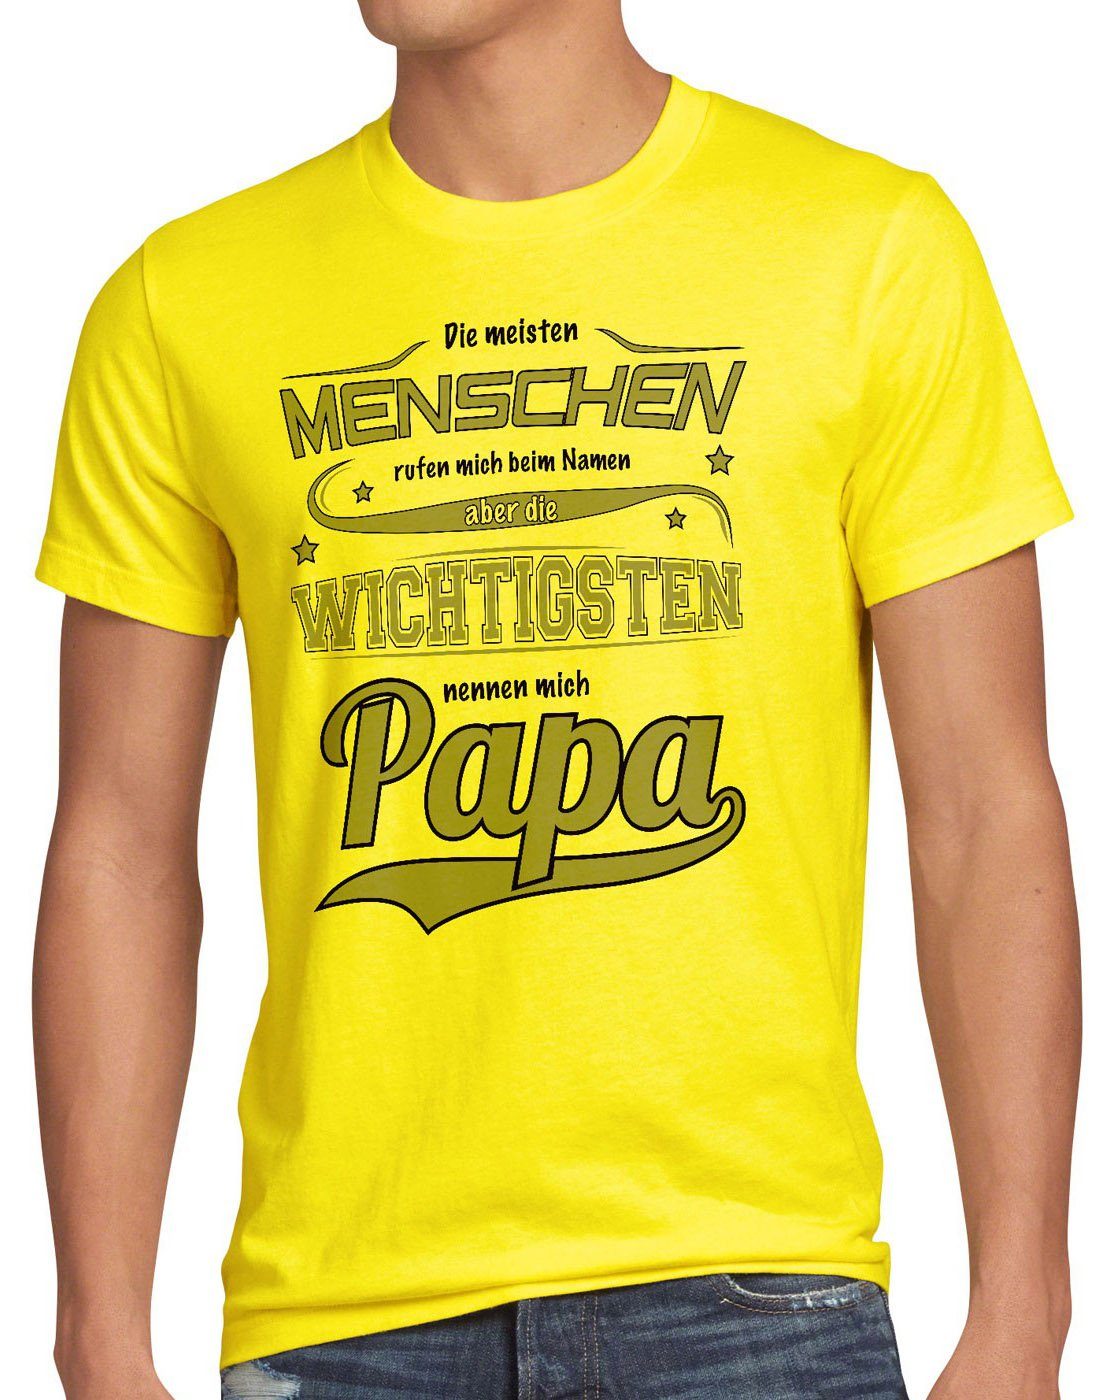 Namen Spruch Print-Shirt Papa Vater gelb style3 rufen Meisten Herren Fun T-Shirt Menschen wichtigsten